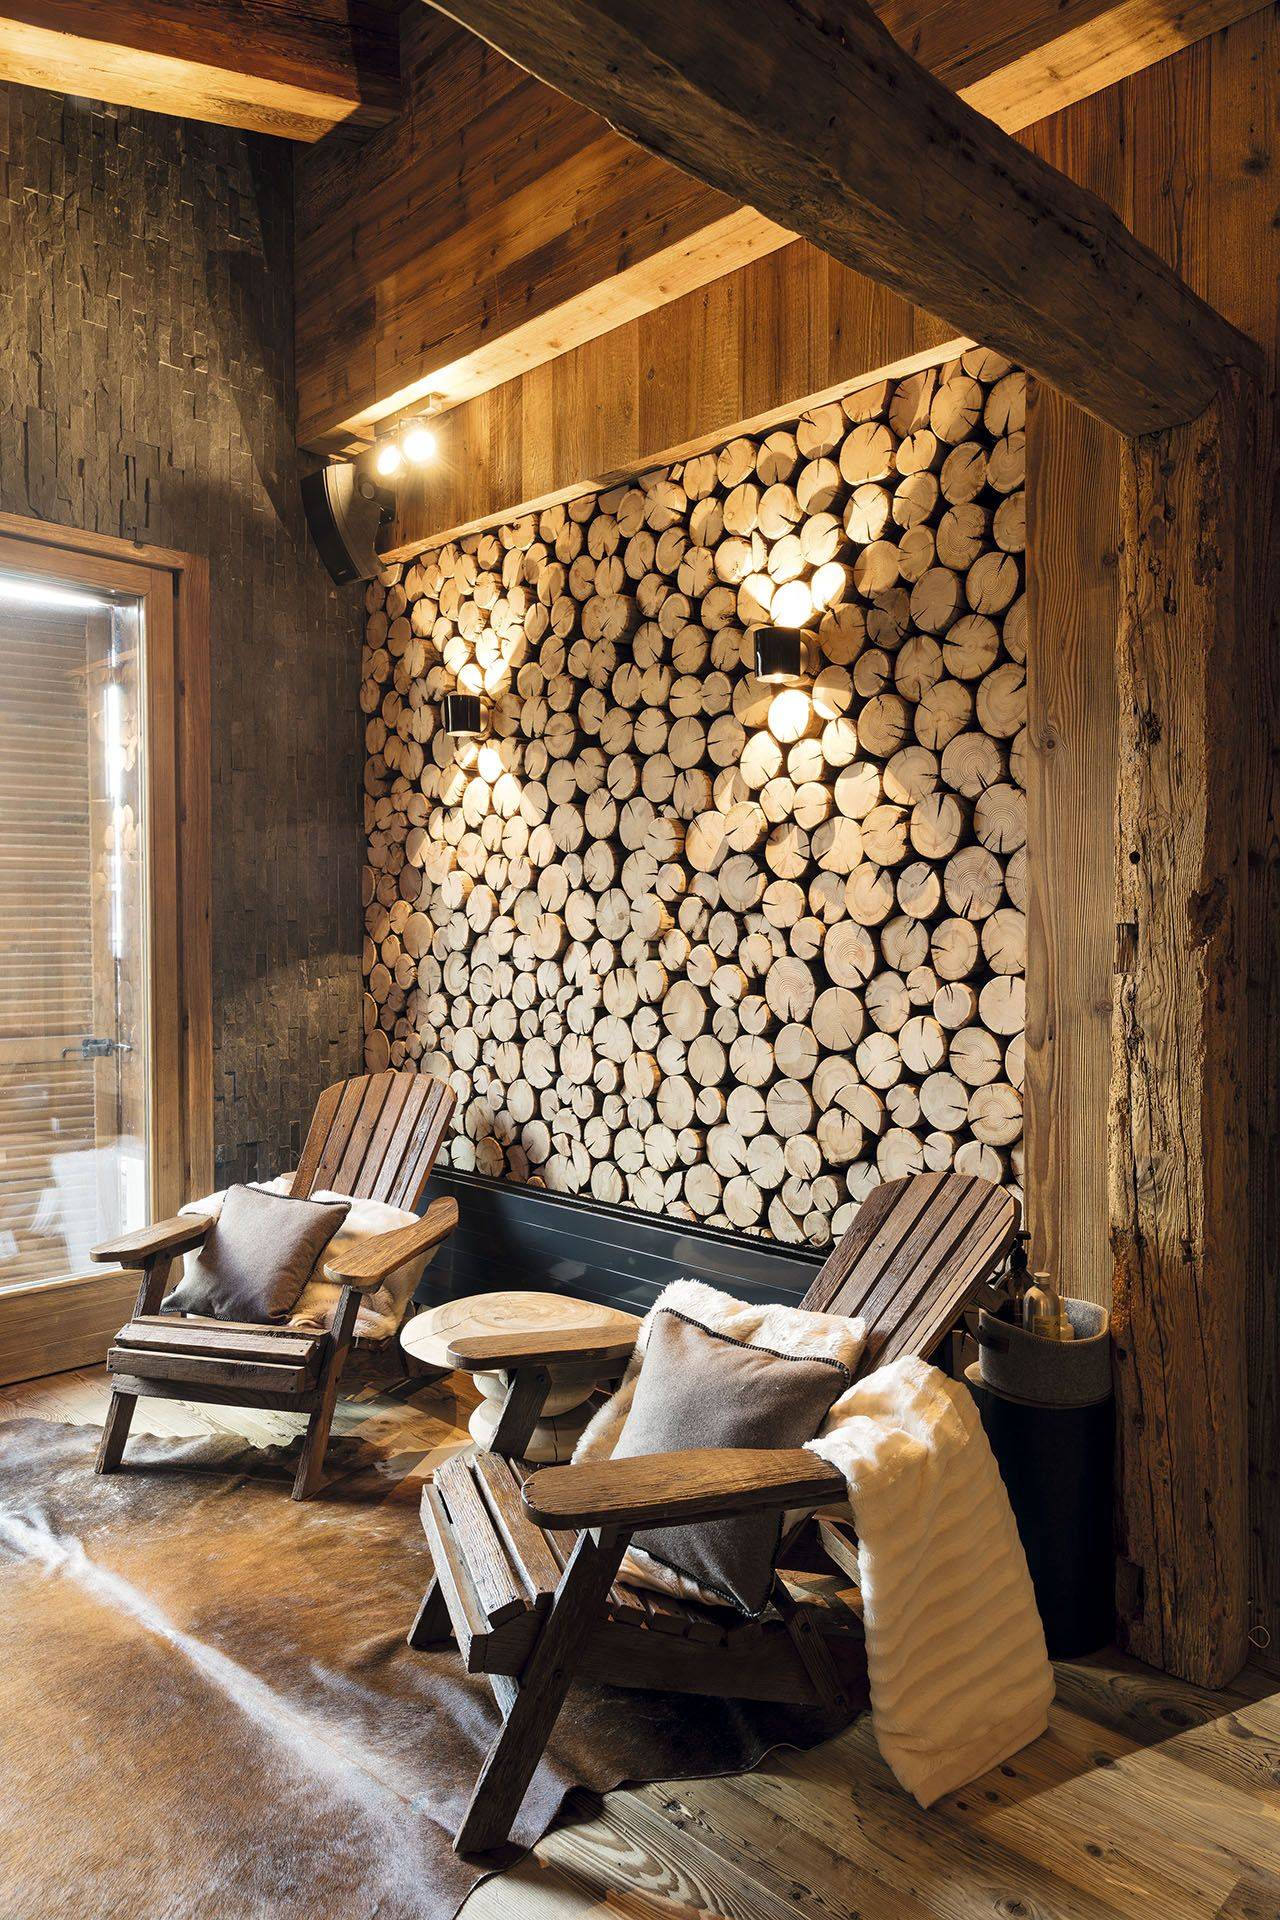 Отделка вагонкой стен и потолка внутри дома: монтаж деревянных ламелей своими руками